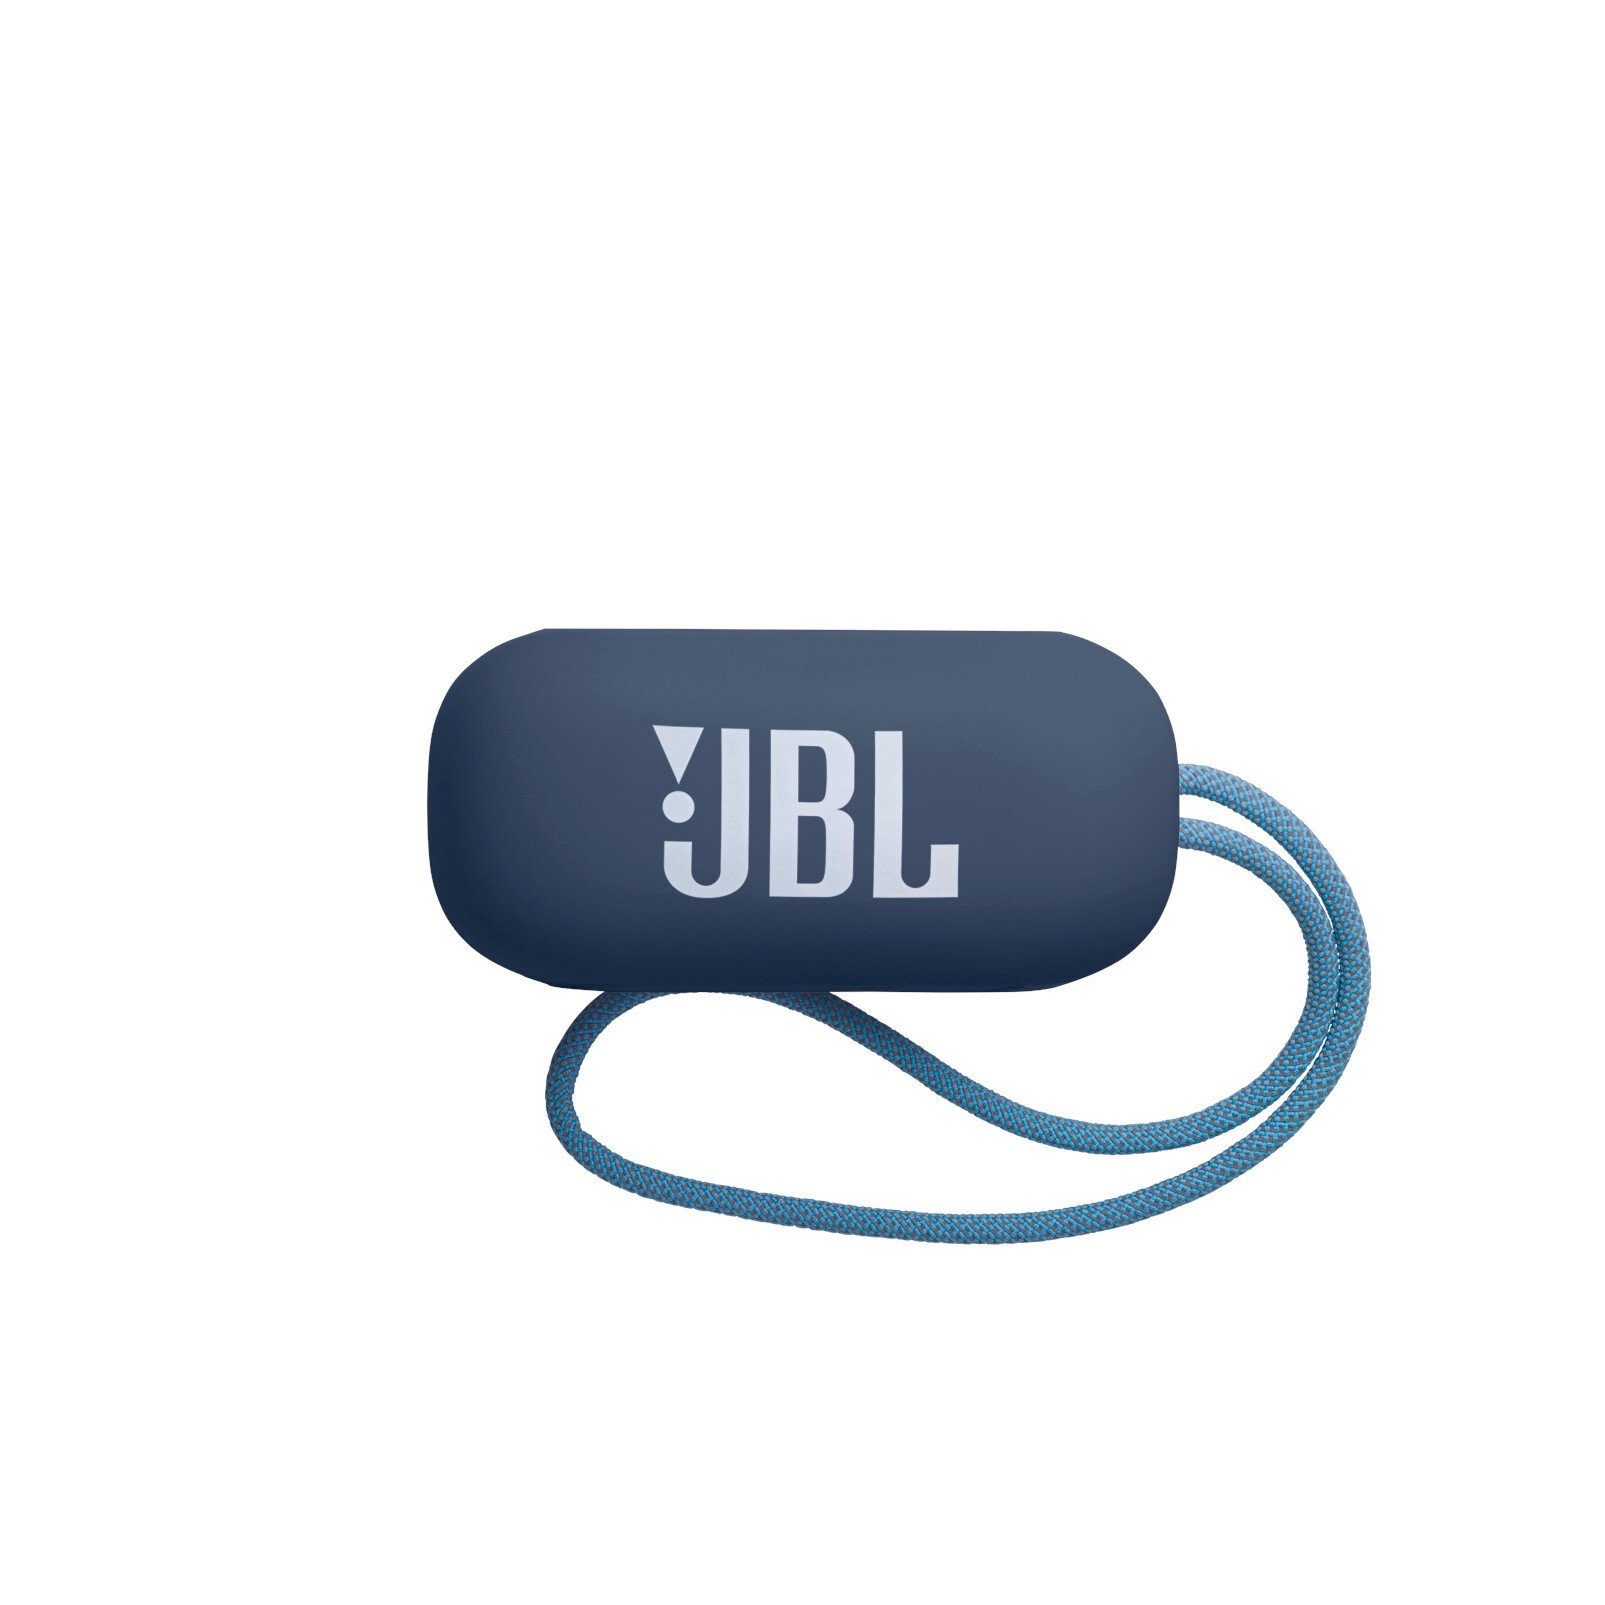 JBL Reflect In-Ear-Kopfhörer wireless Aero Blau